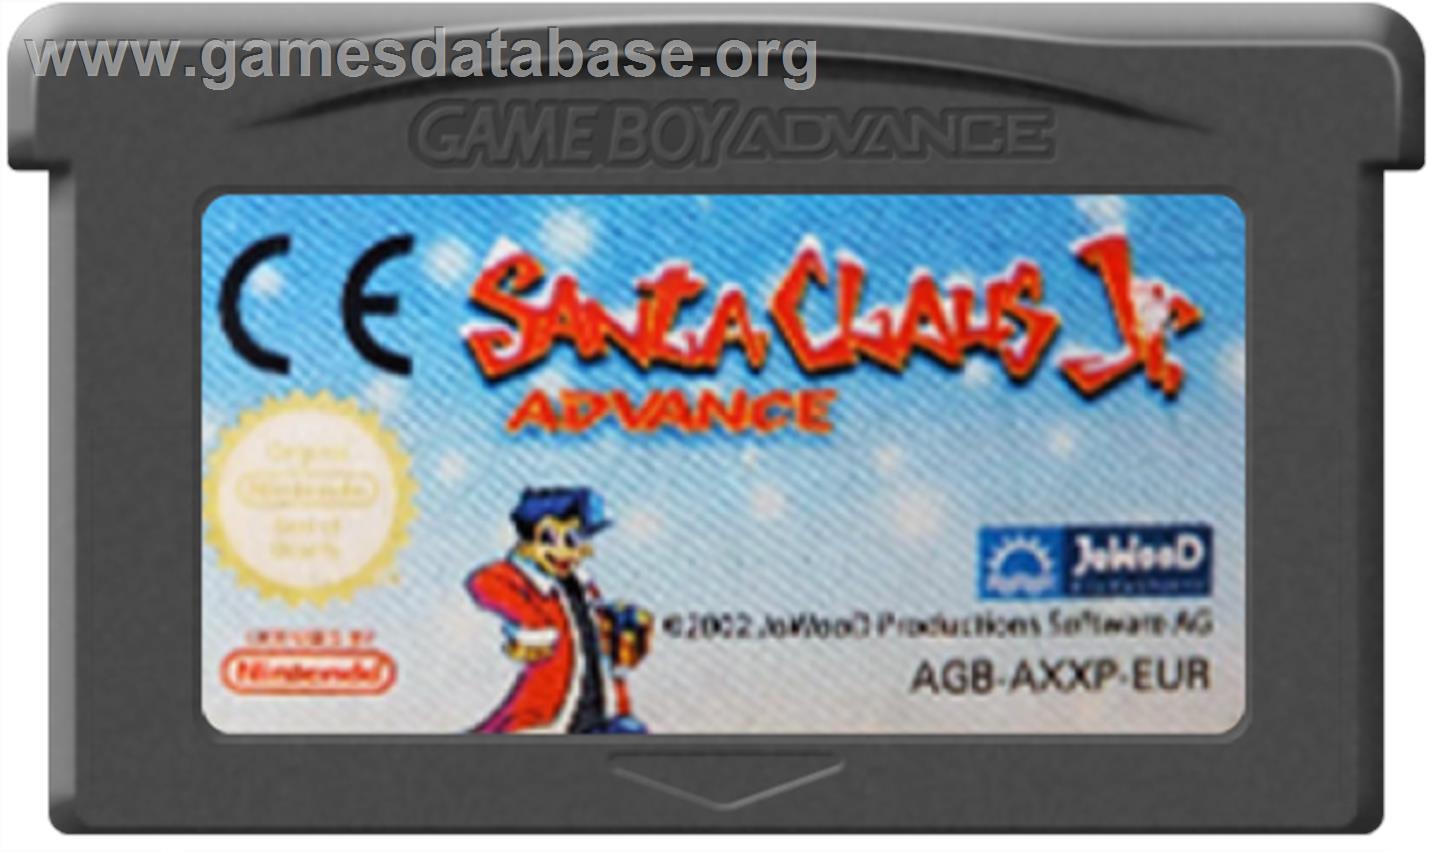 Santa Claus Jr. Advance - Nintendo Game Boy Advance - Artwork - Cartridge